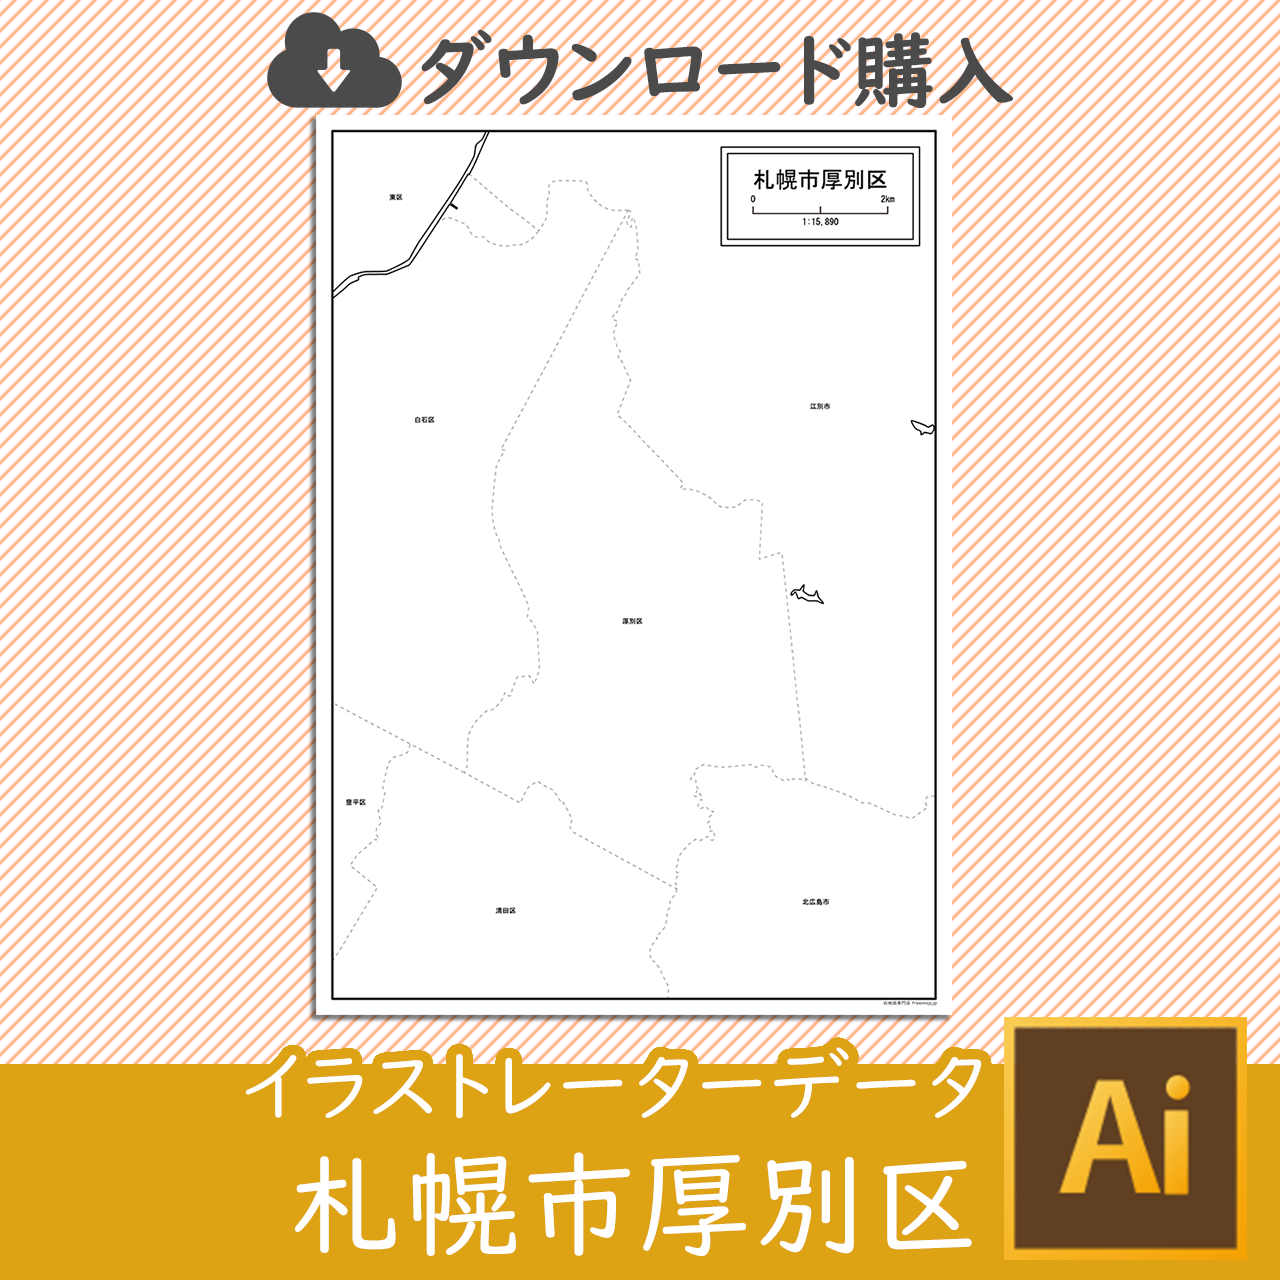 札幌市厚別区のaiデータのサムネイル画像